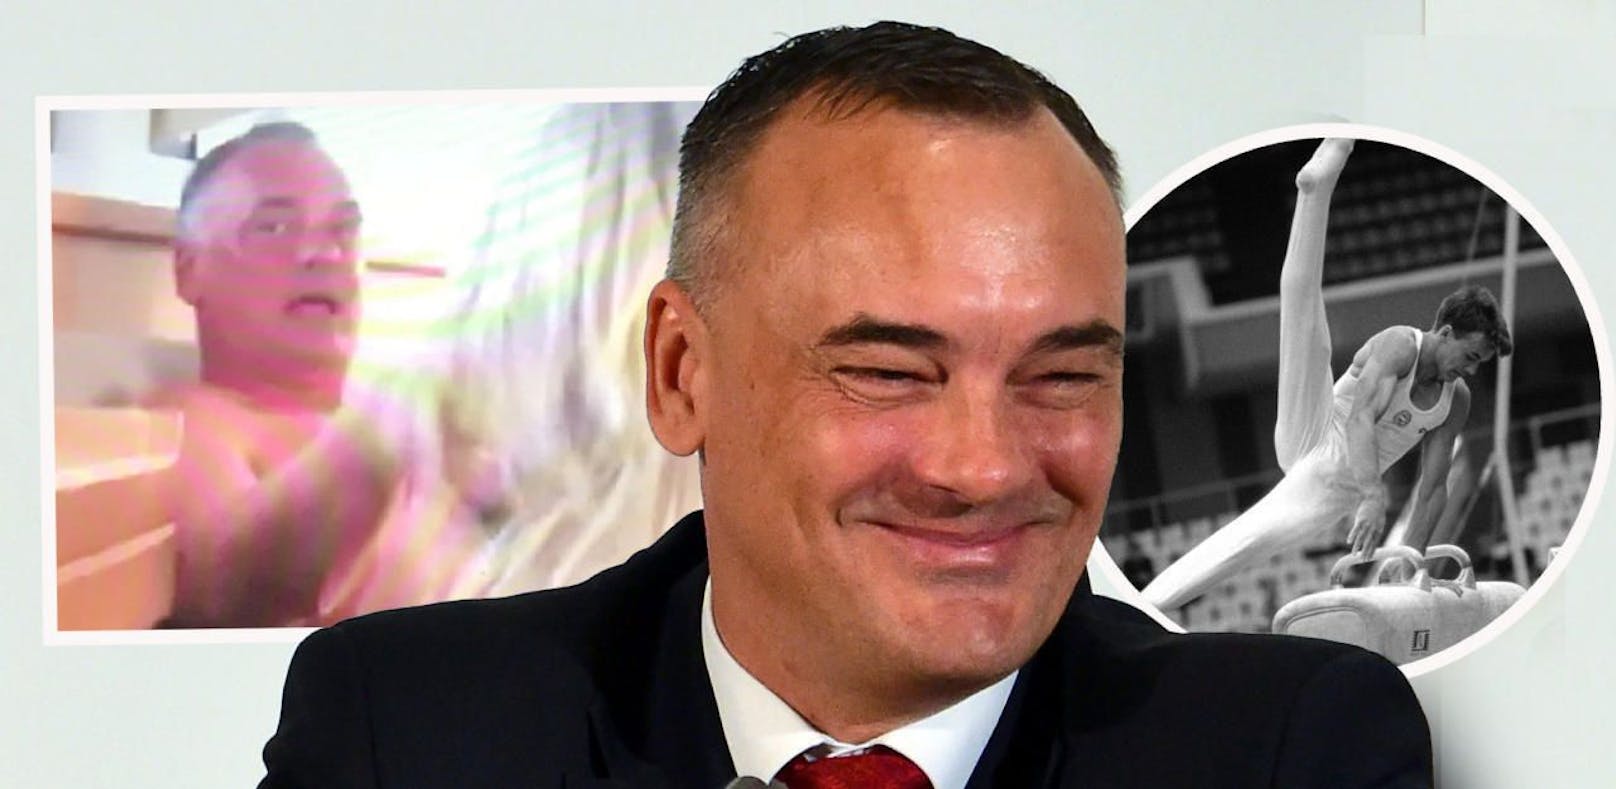 Zsolt Borkai im Vordergrund 2015 in seiner ehemaligen Funktion als Präsident von Ungarns nationalem Olympischen Komitees. Rechts zu aktiven Zeiten als Turner. Links ein vergleichsweise sehr harmloser Ausschnitt des geleakten Bildmaterials, als er schon Bürgermeister von Györ war.